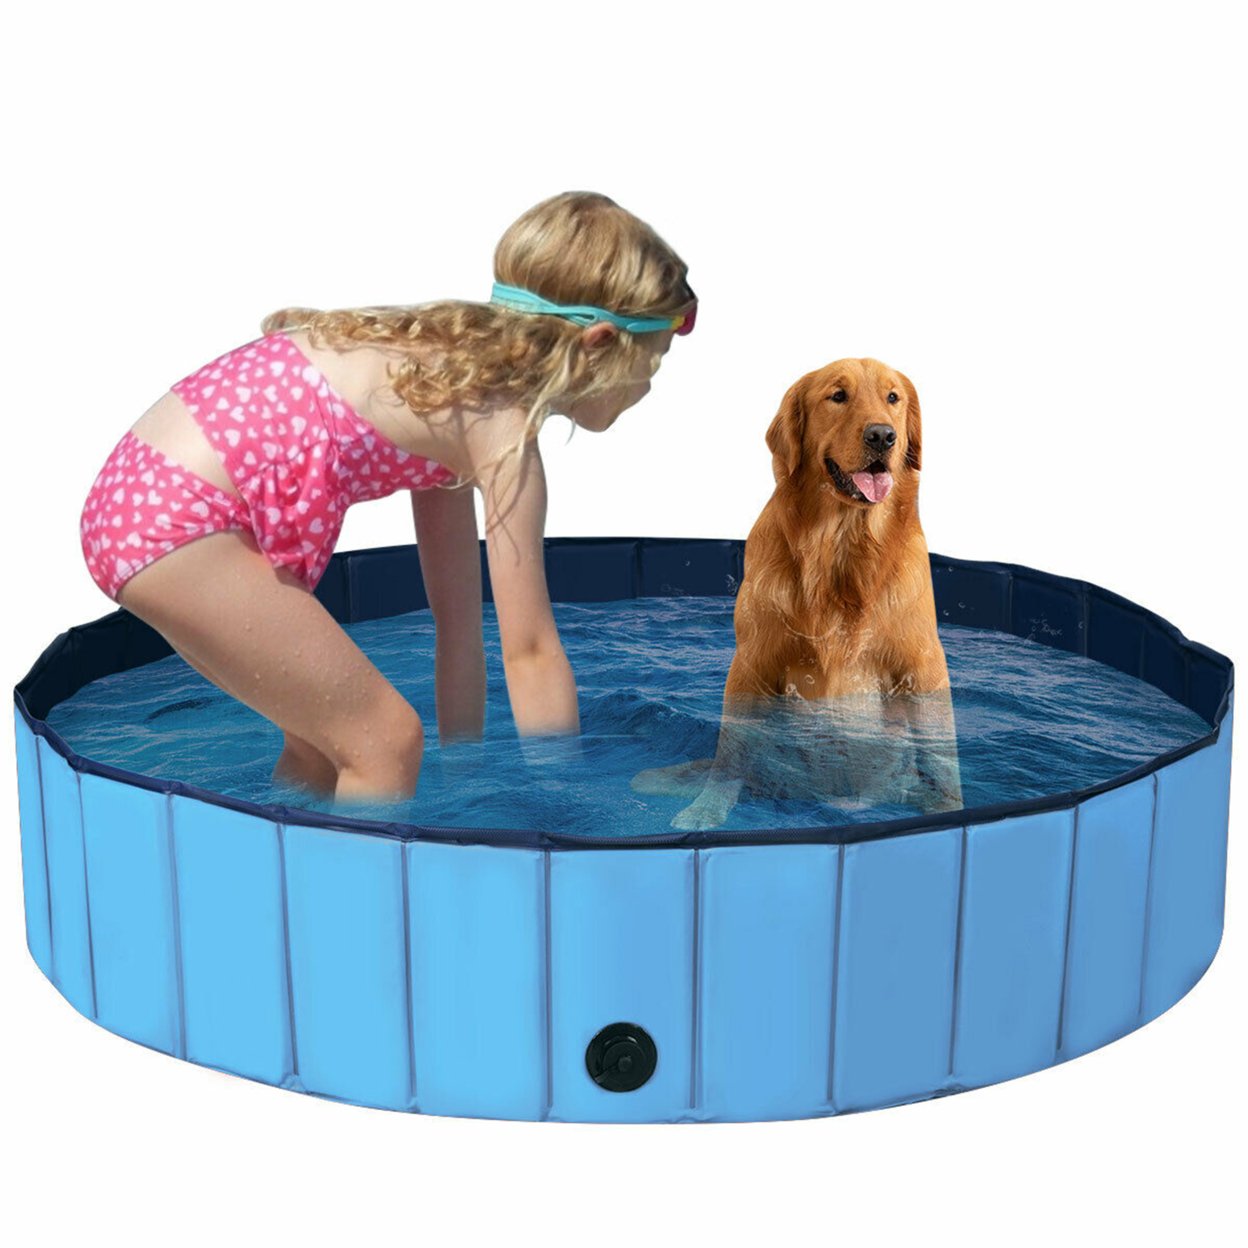 55'' Foldable Dog Pet Pool Kiddie Bathing Tub Indoor Outdoor Portable Leakproof